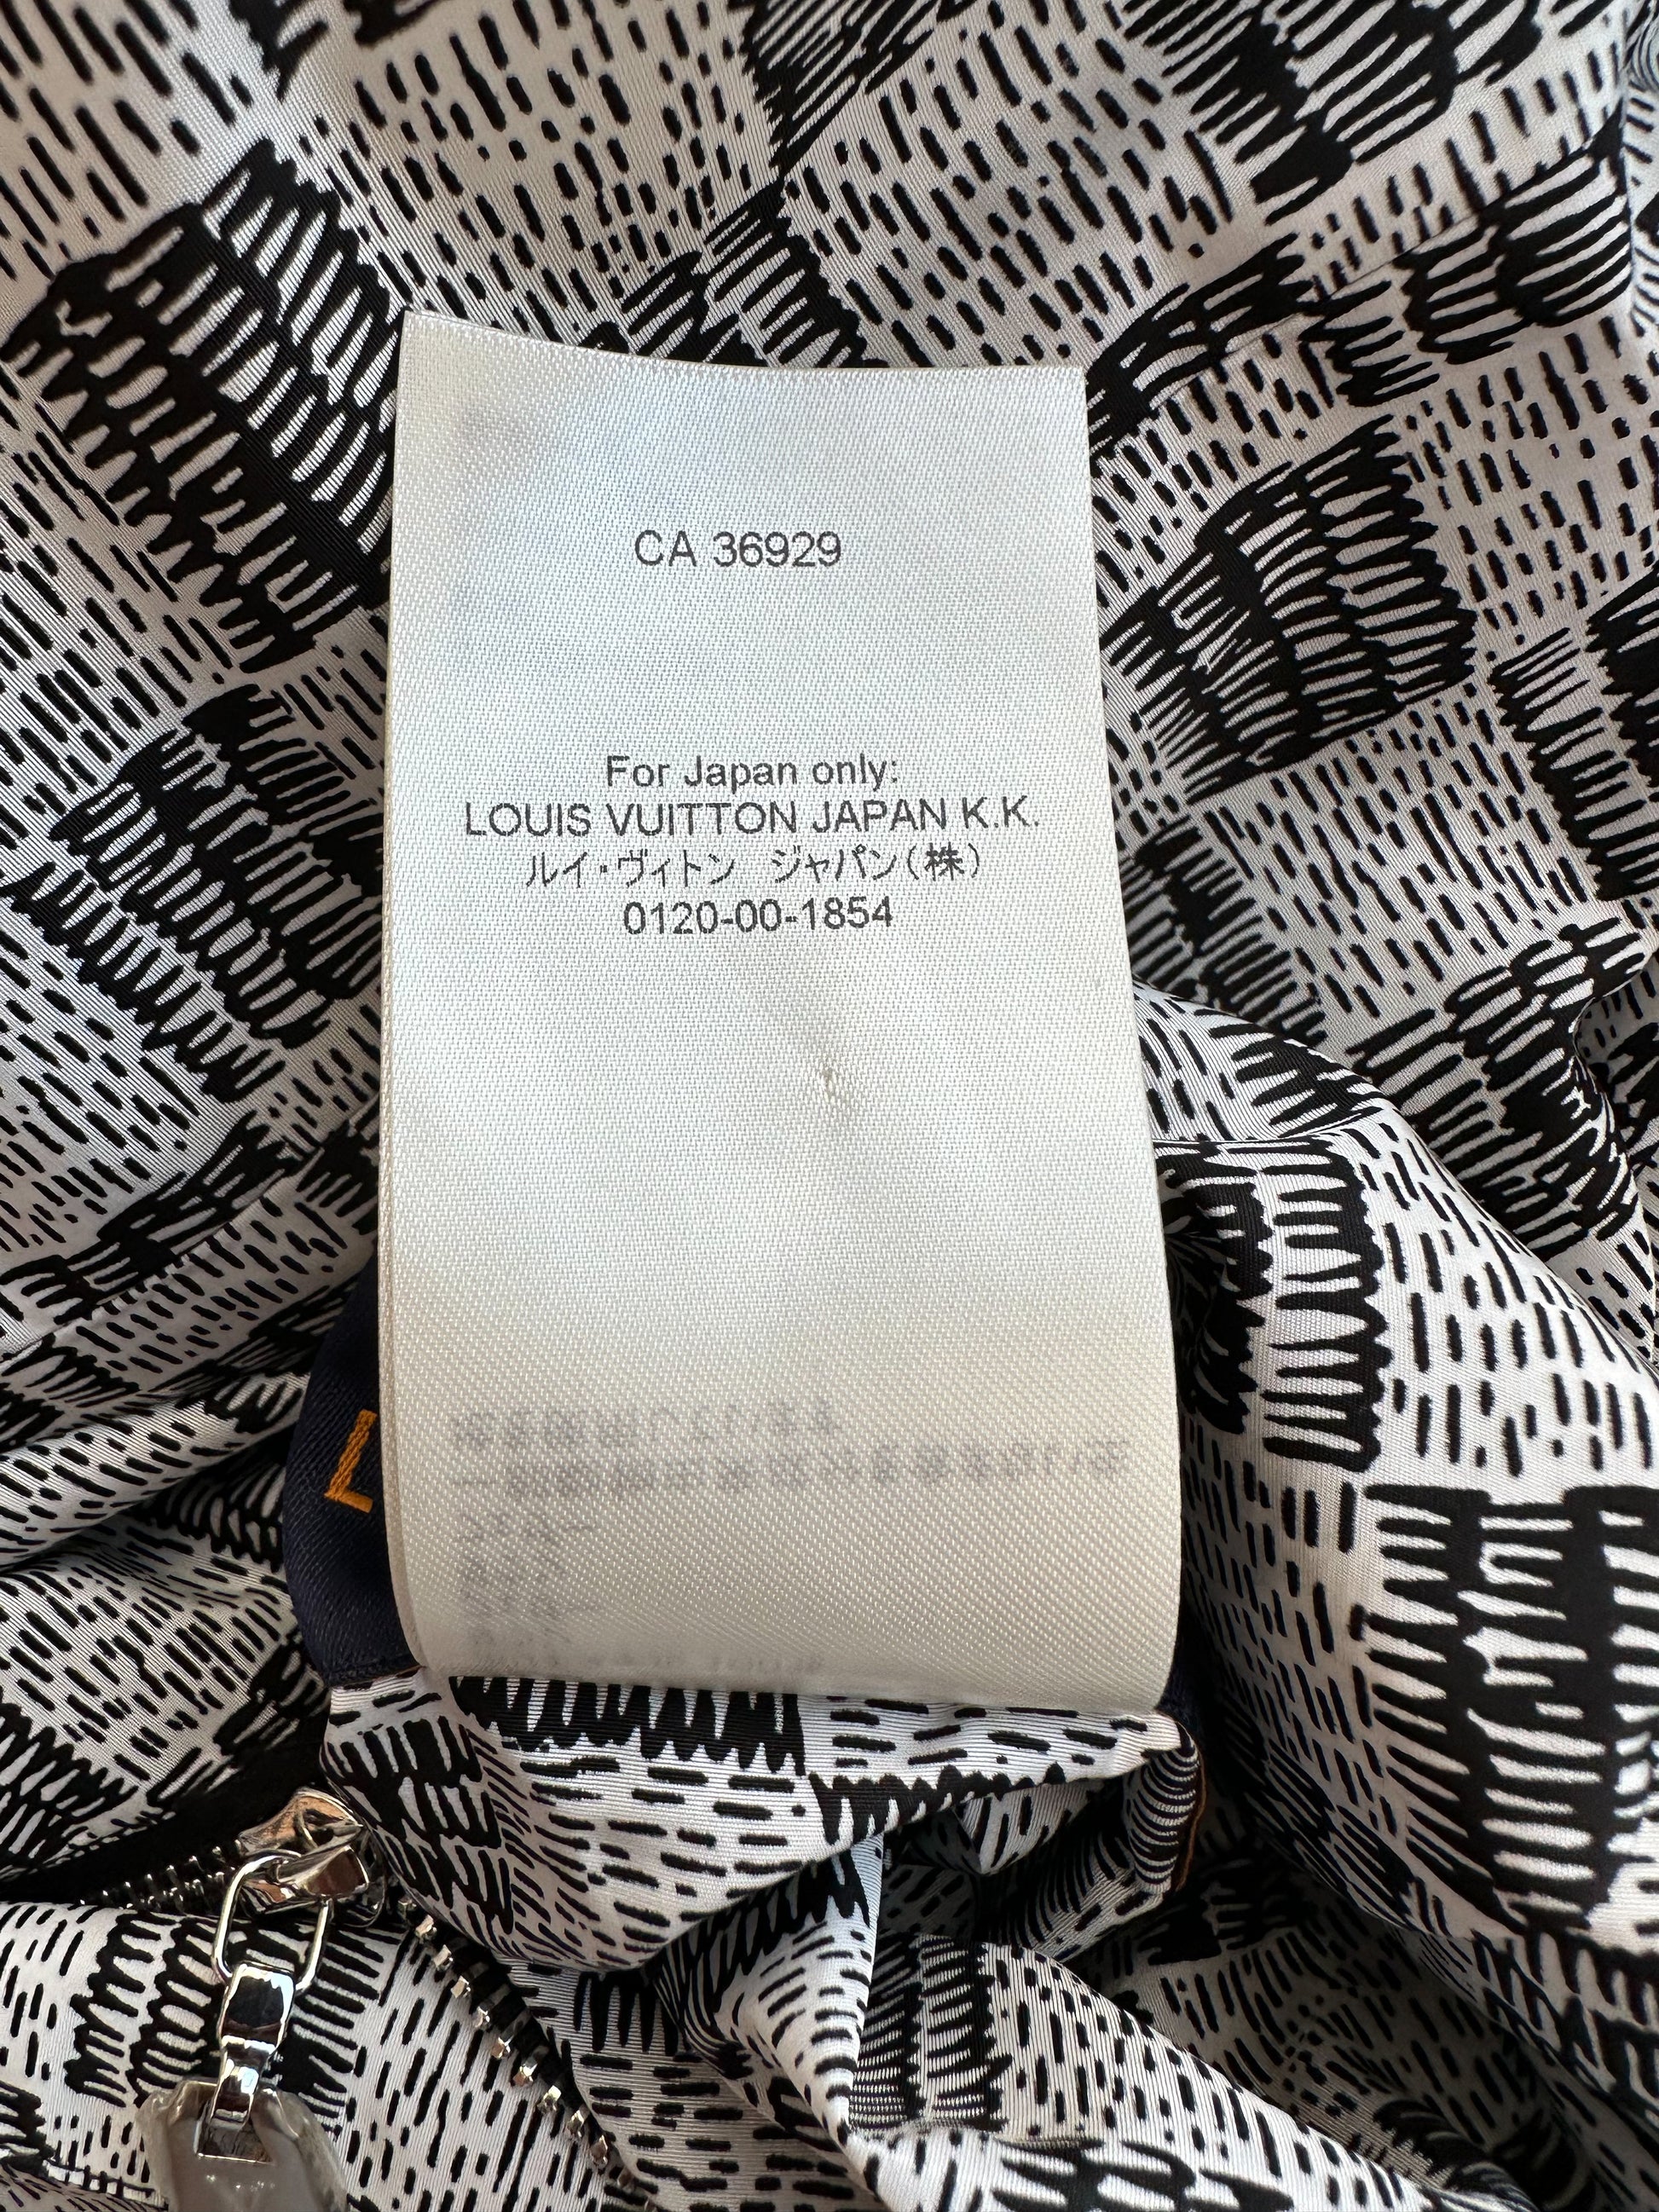 Louis Vuitton Red Flower Monogram Puffer Jacket – Savonches